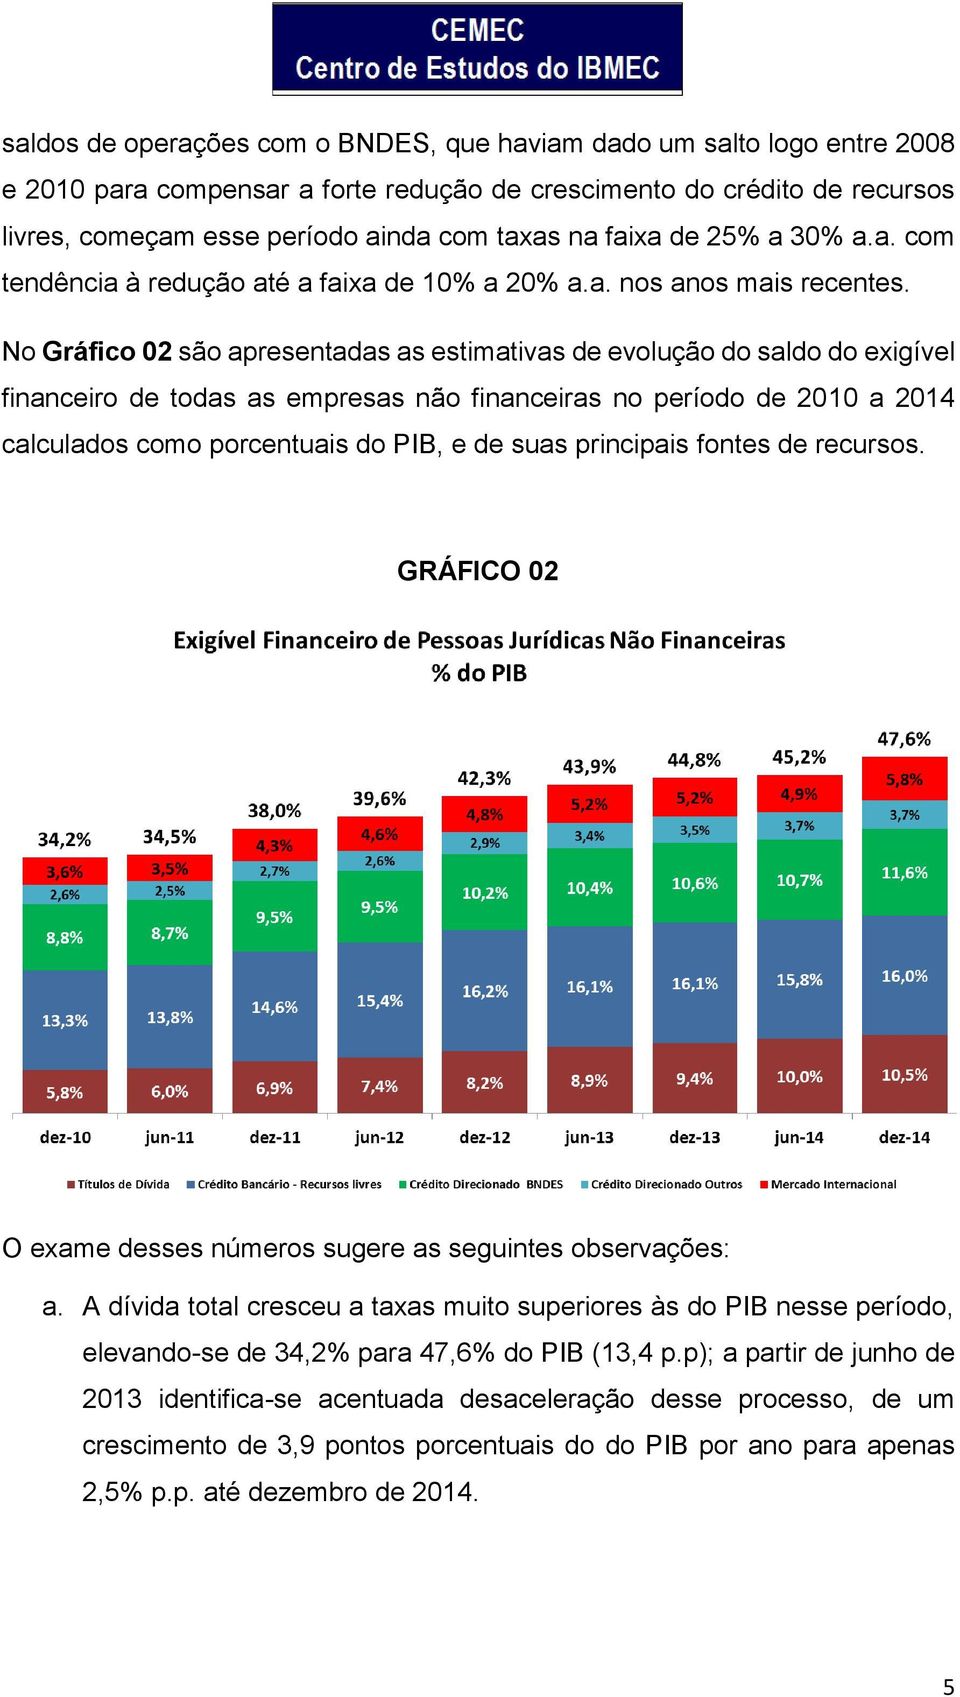 No Gráfico 02 são apresentadas as estimativas de evolução do saldo do exigível financeiro de todas as empresas não financeiras no período de 2010 a 2014 calculados como porcentuais do PIB, e de suas